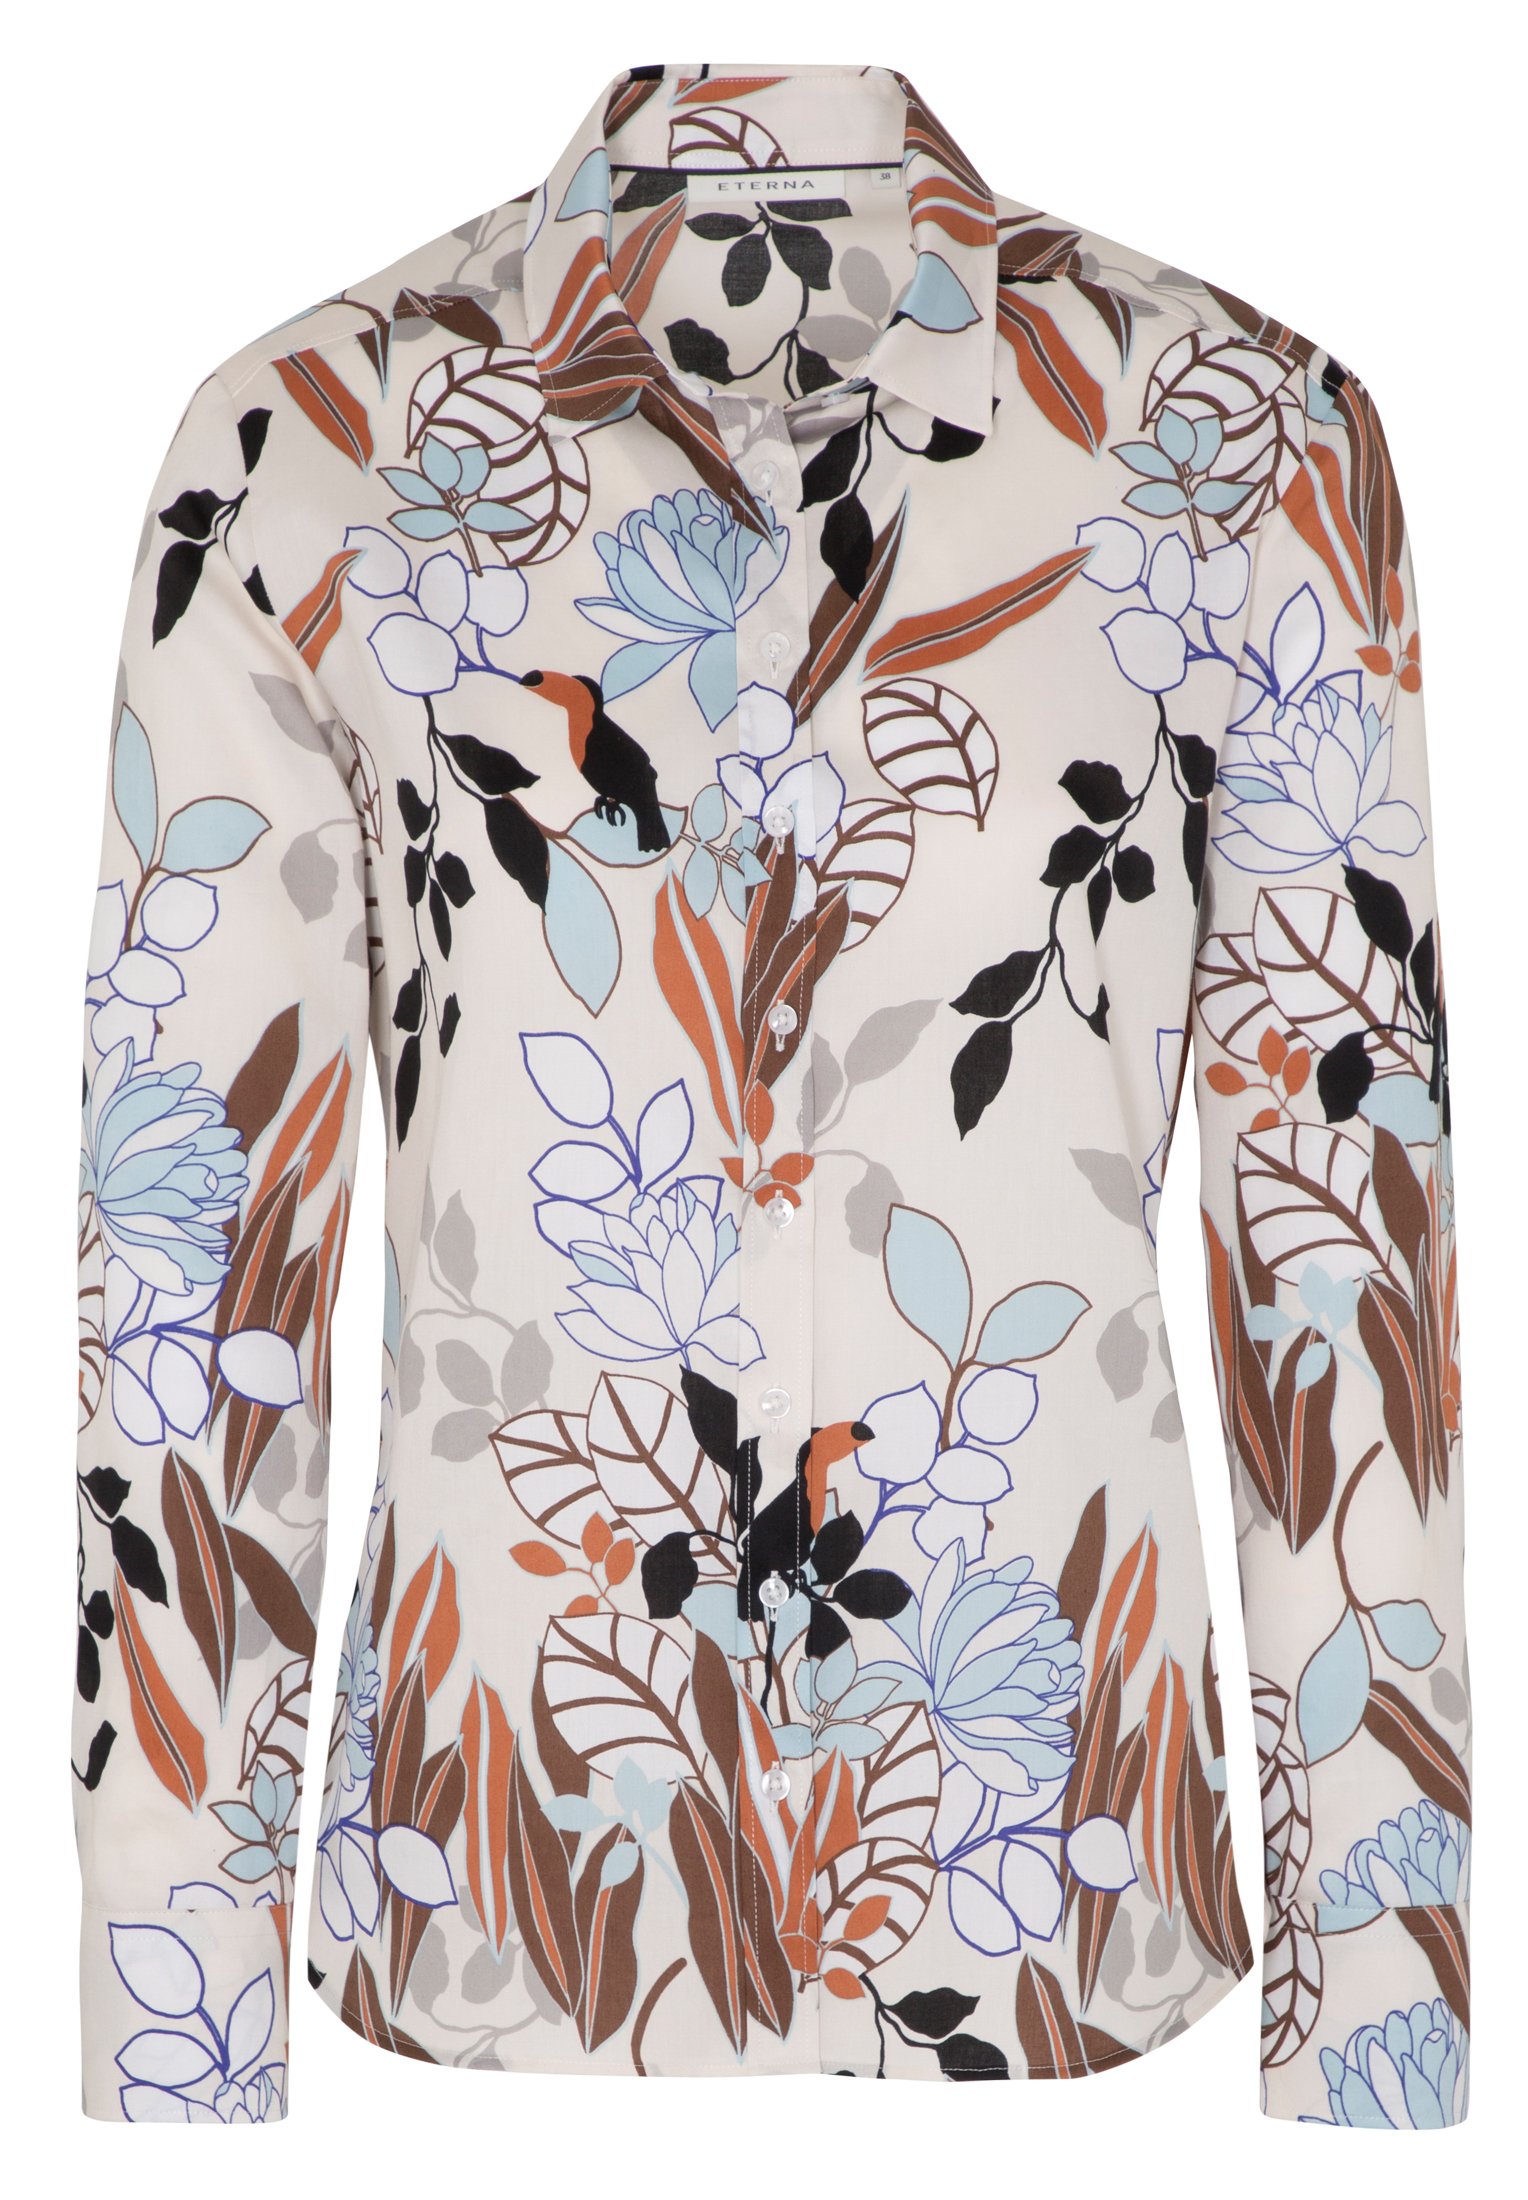 ETERNA CLASSIC FIT Langarm Bluse bunt floral satin 7263-05-D780 | Jeans ...